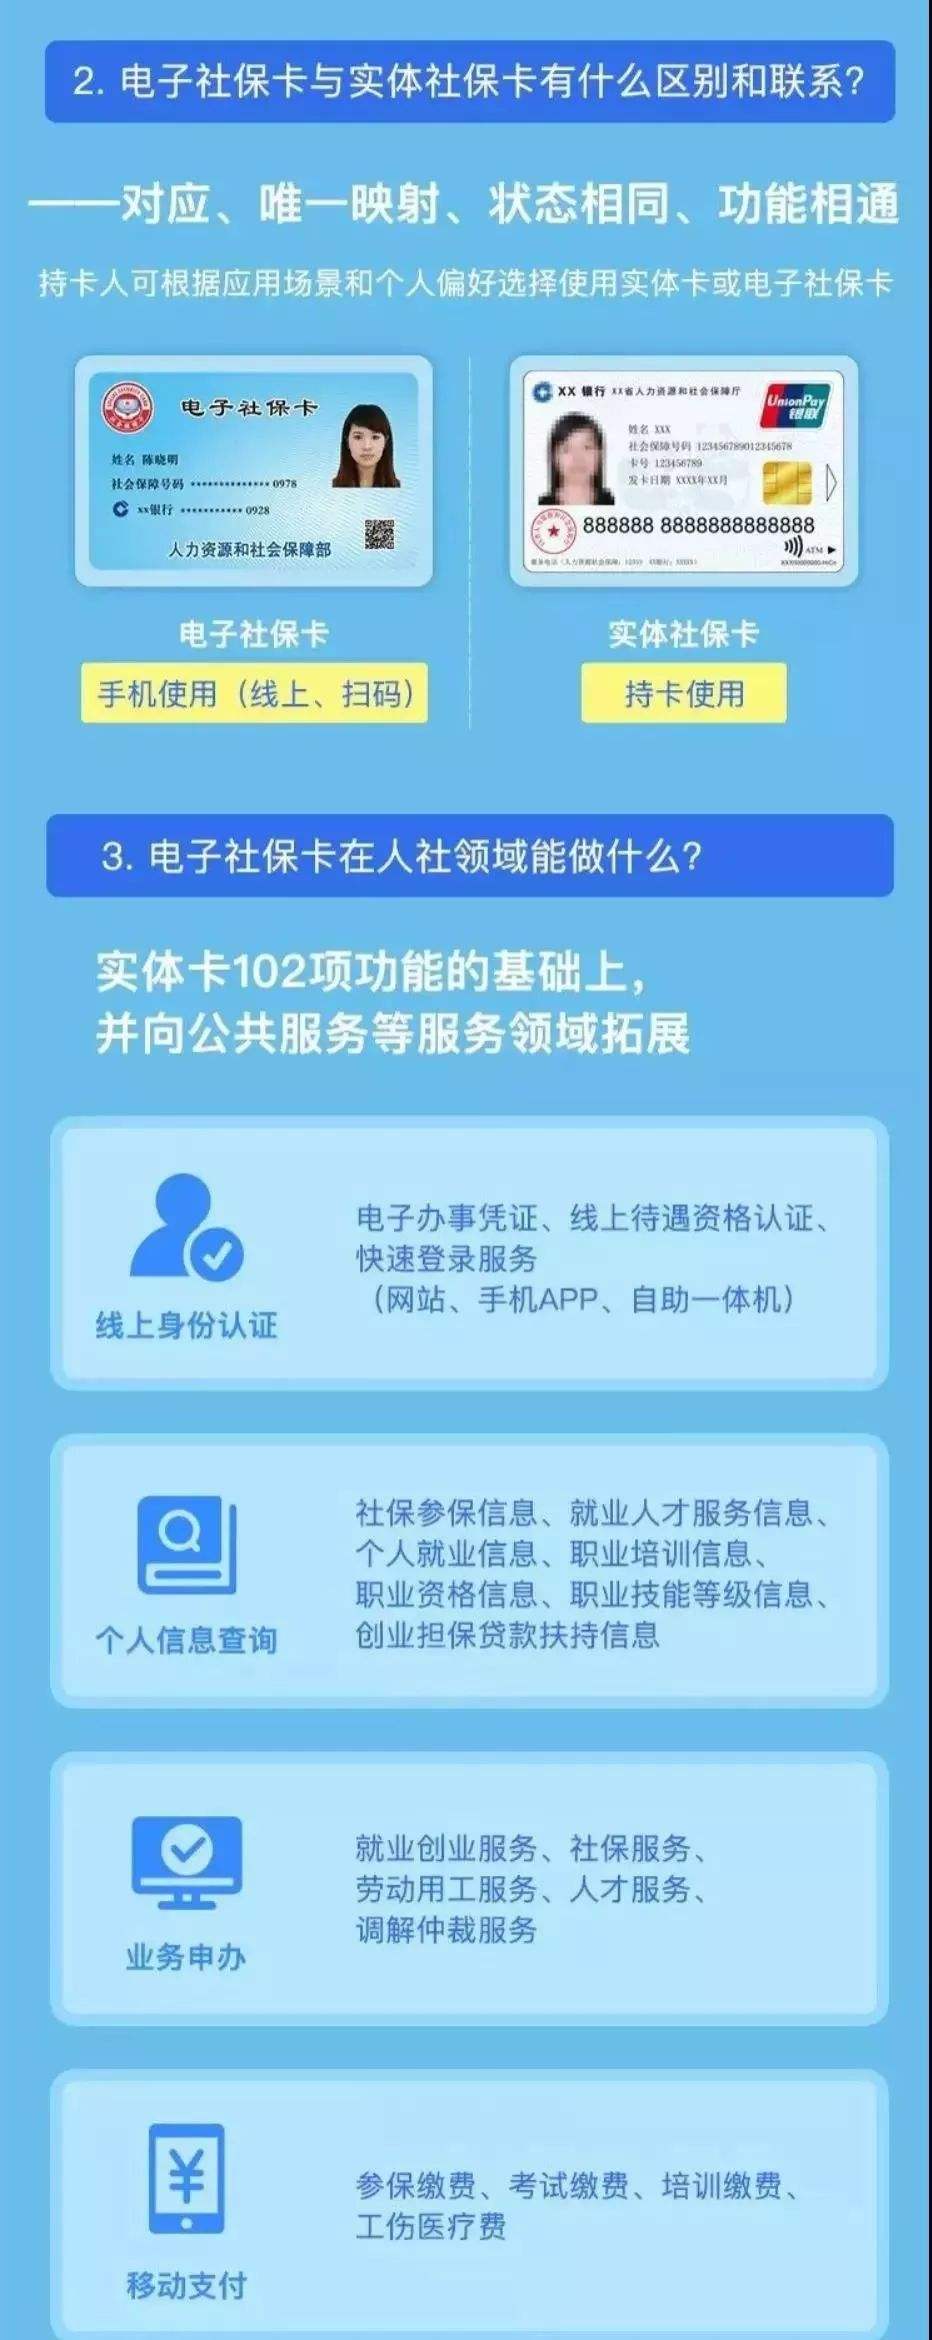 苹果版闽政通快捷指令苹果nfc快捷指令添加